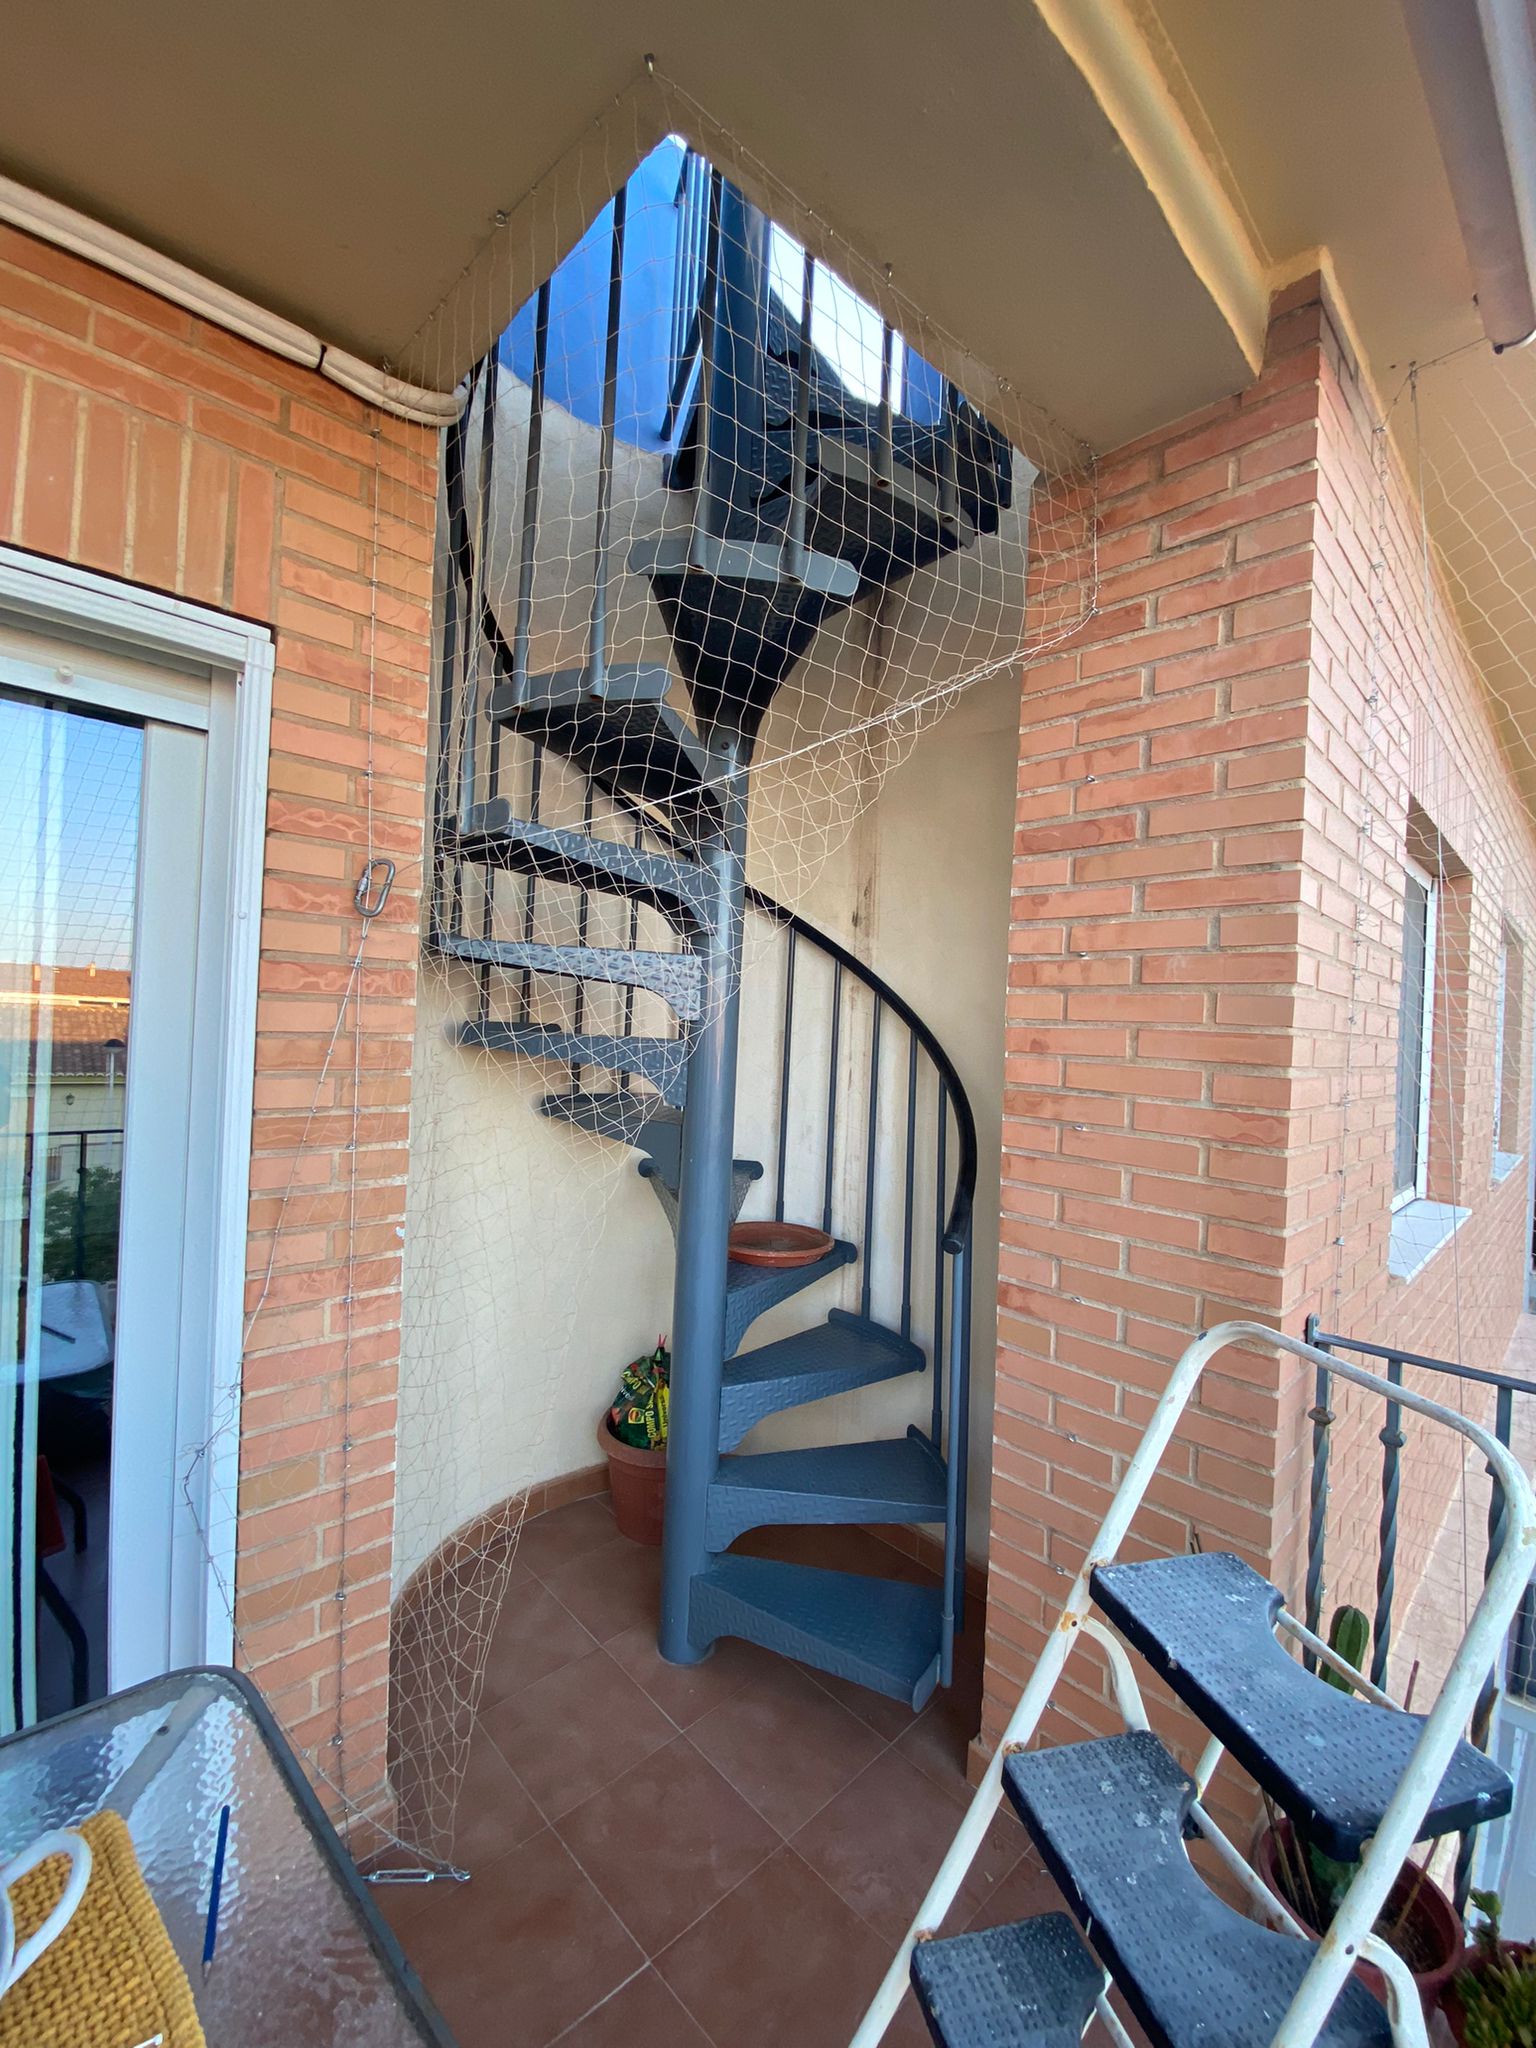 Instalación de redes de seguridad para gatos en ventanas balcón y escalera  con sistema desmontable para el acceso